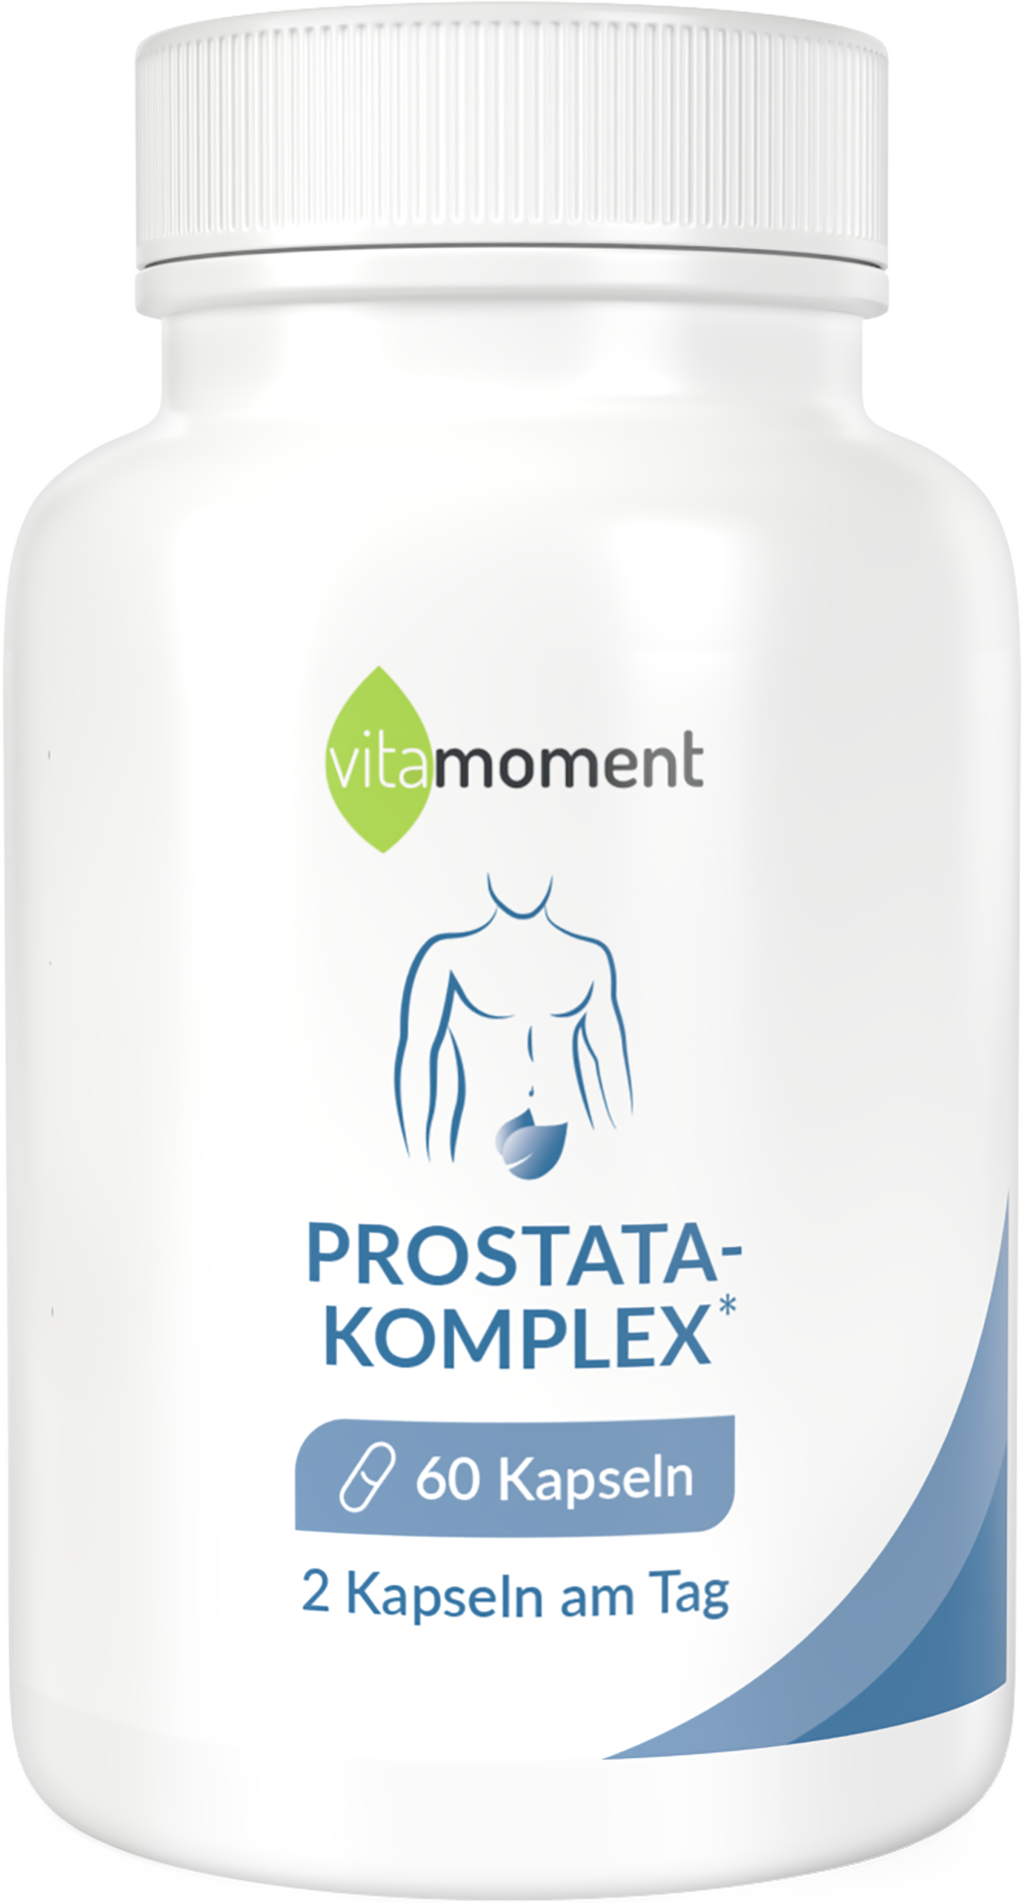 Prostata-Komplex - 1 Dose - VitaMoment Produkt